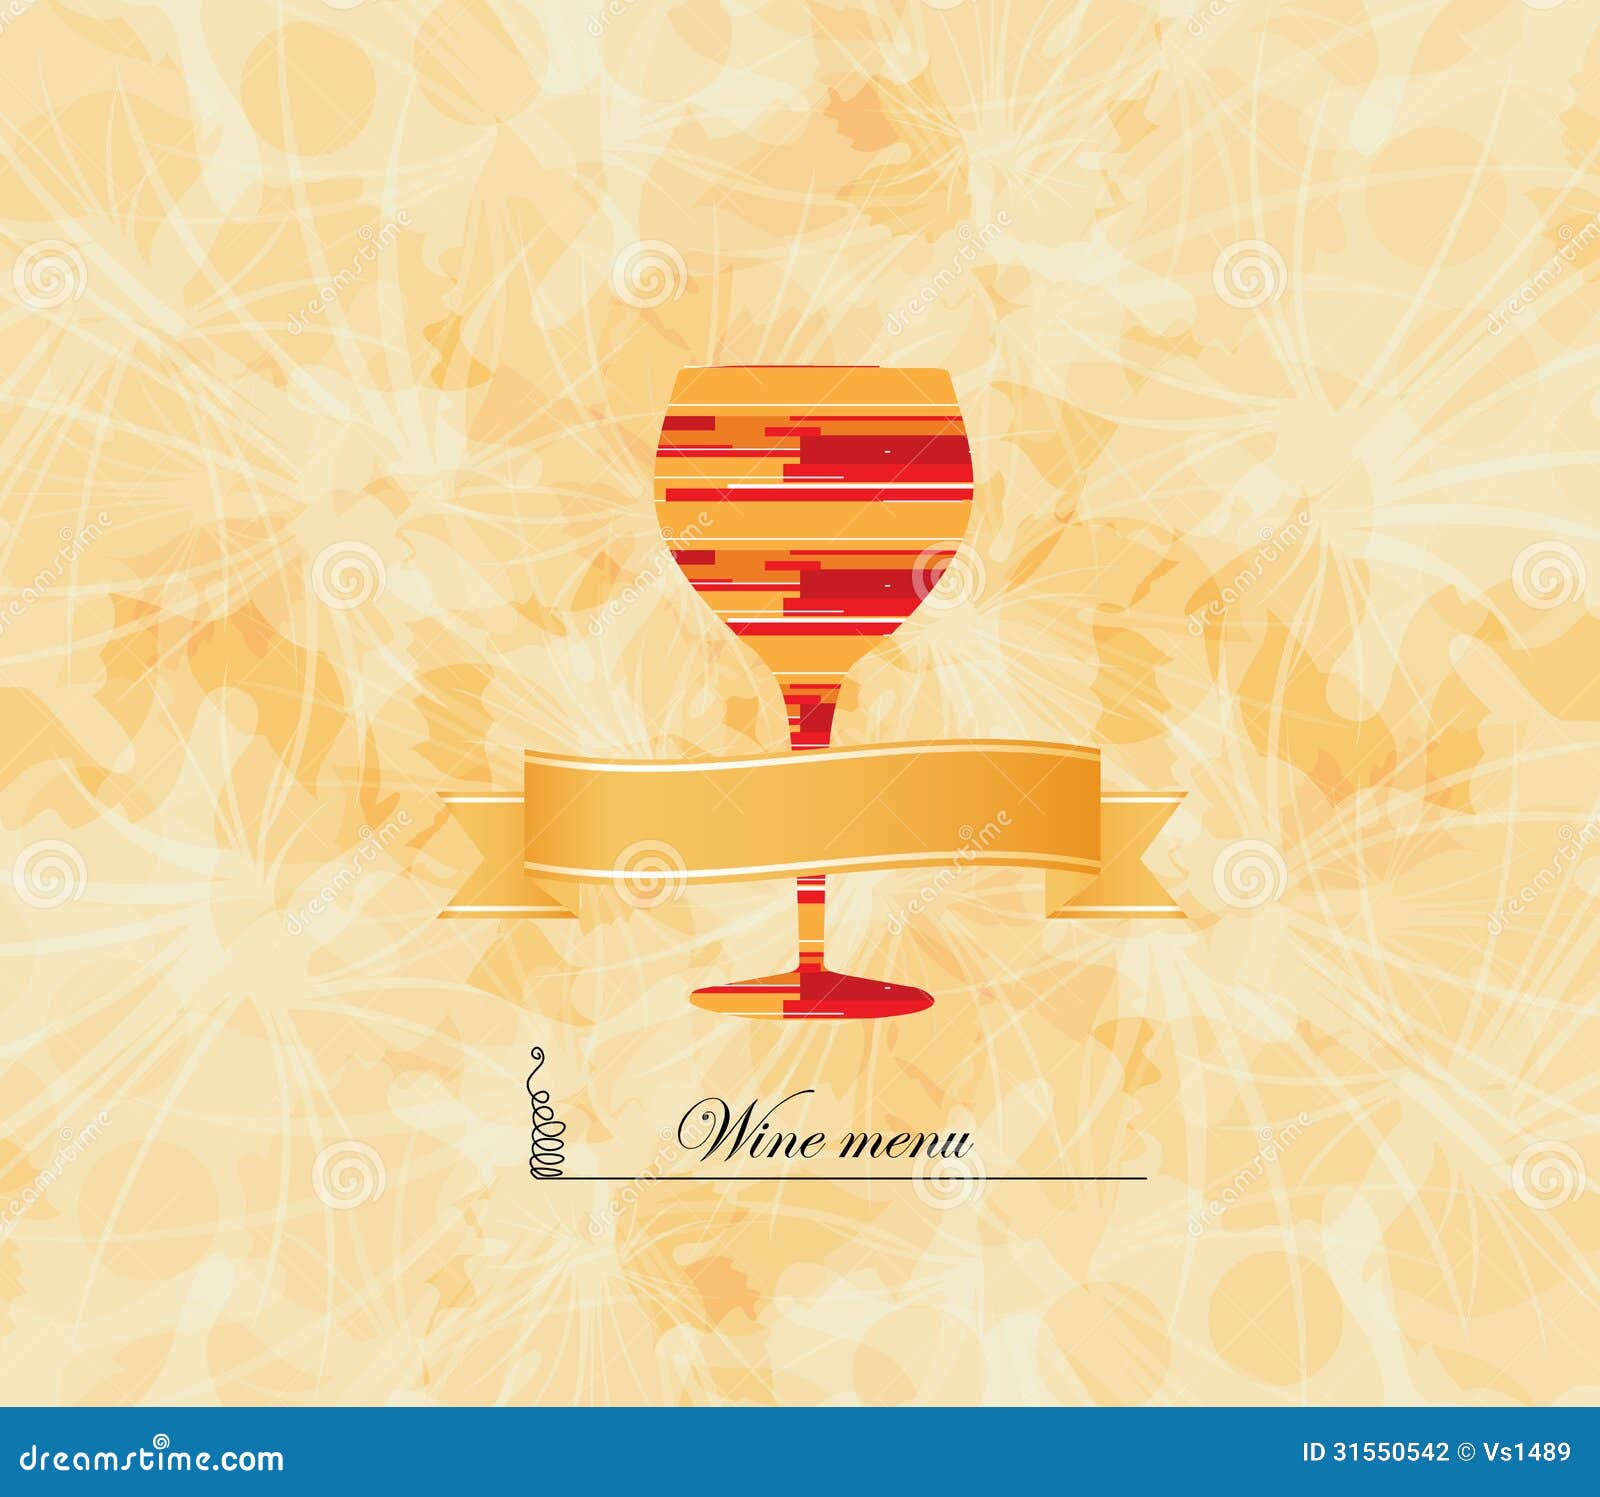 Những chiếc thẻ thực đơn rượu vang được thiết kế tinh tế và đẳng cấp. Với chất liệu giấy cao cấp và hình ảnh đầy thú vị, chắc chắn sẽ làm tăng thêm trải nghiệm của thực khách khi thưởng thức rượu vang. 